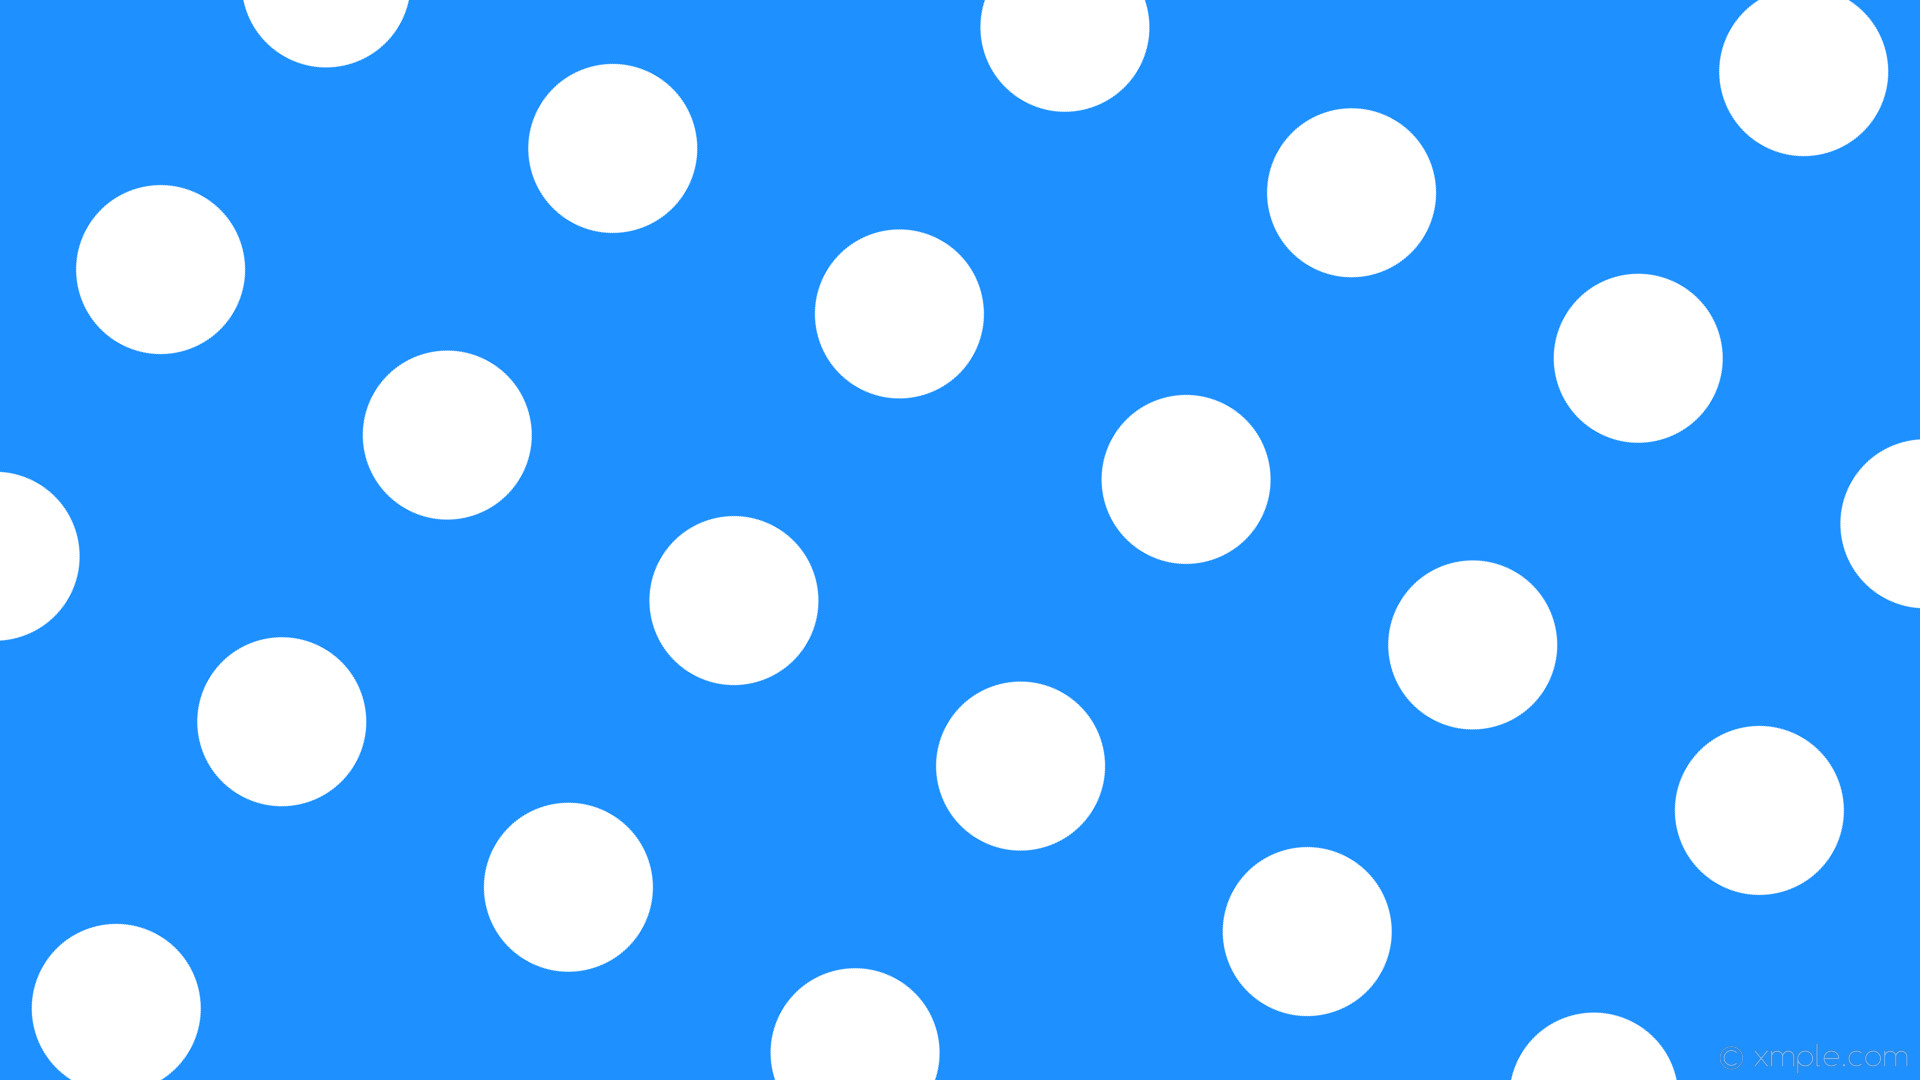 Wallpaper blue spots dots polka green #1e90ff #00ff00 150Â° 180px 349px